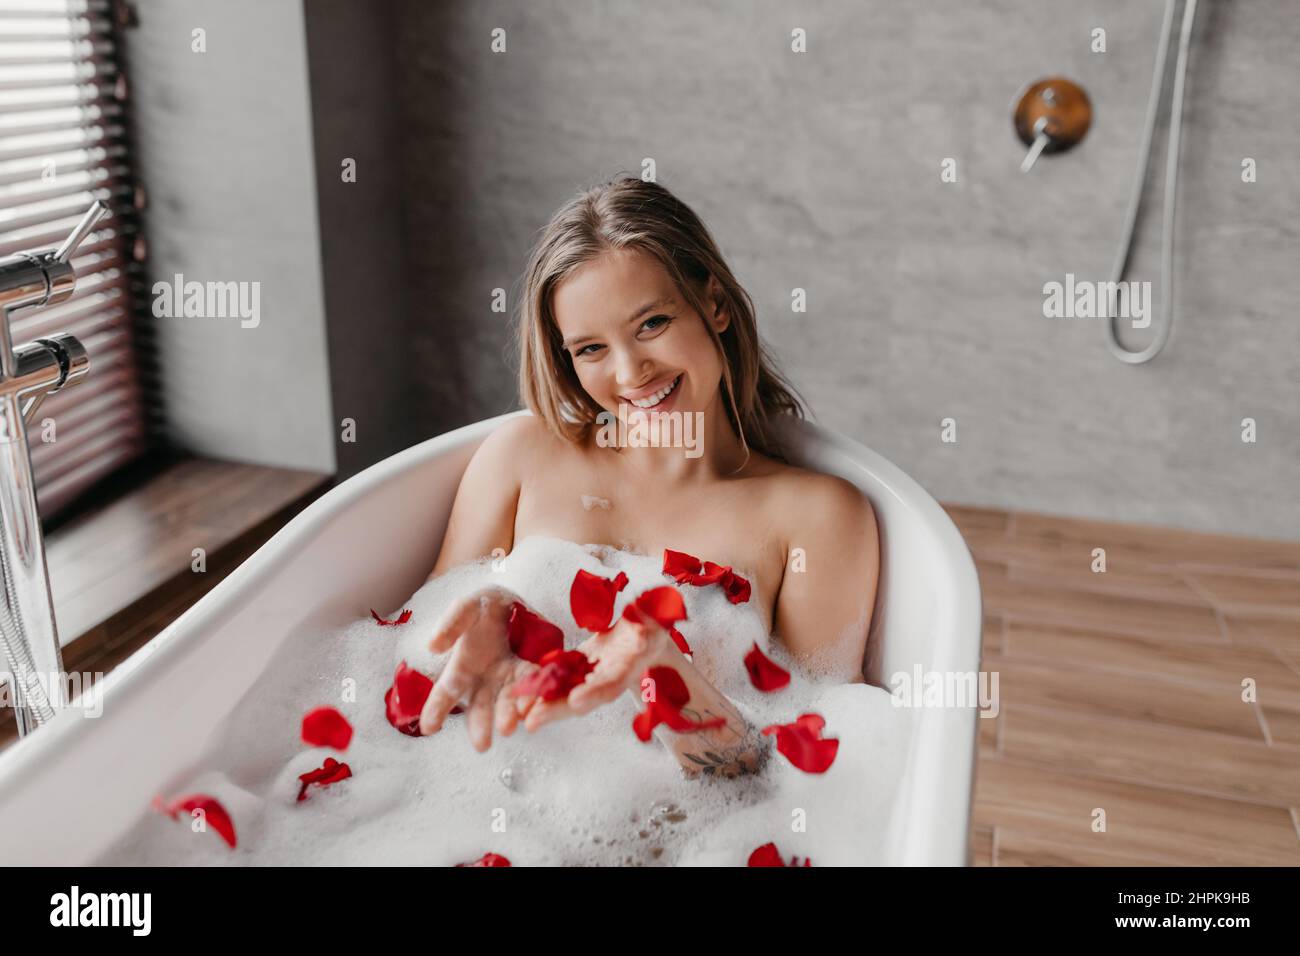 Spa-Behandlungen zu Hause. Glückliche junge kaukasische Dame, die sich in der Badewanne mit Schaumstoff und Blütenblättern entspannt und die Kamera anlächelt Stockfoto